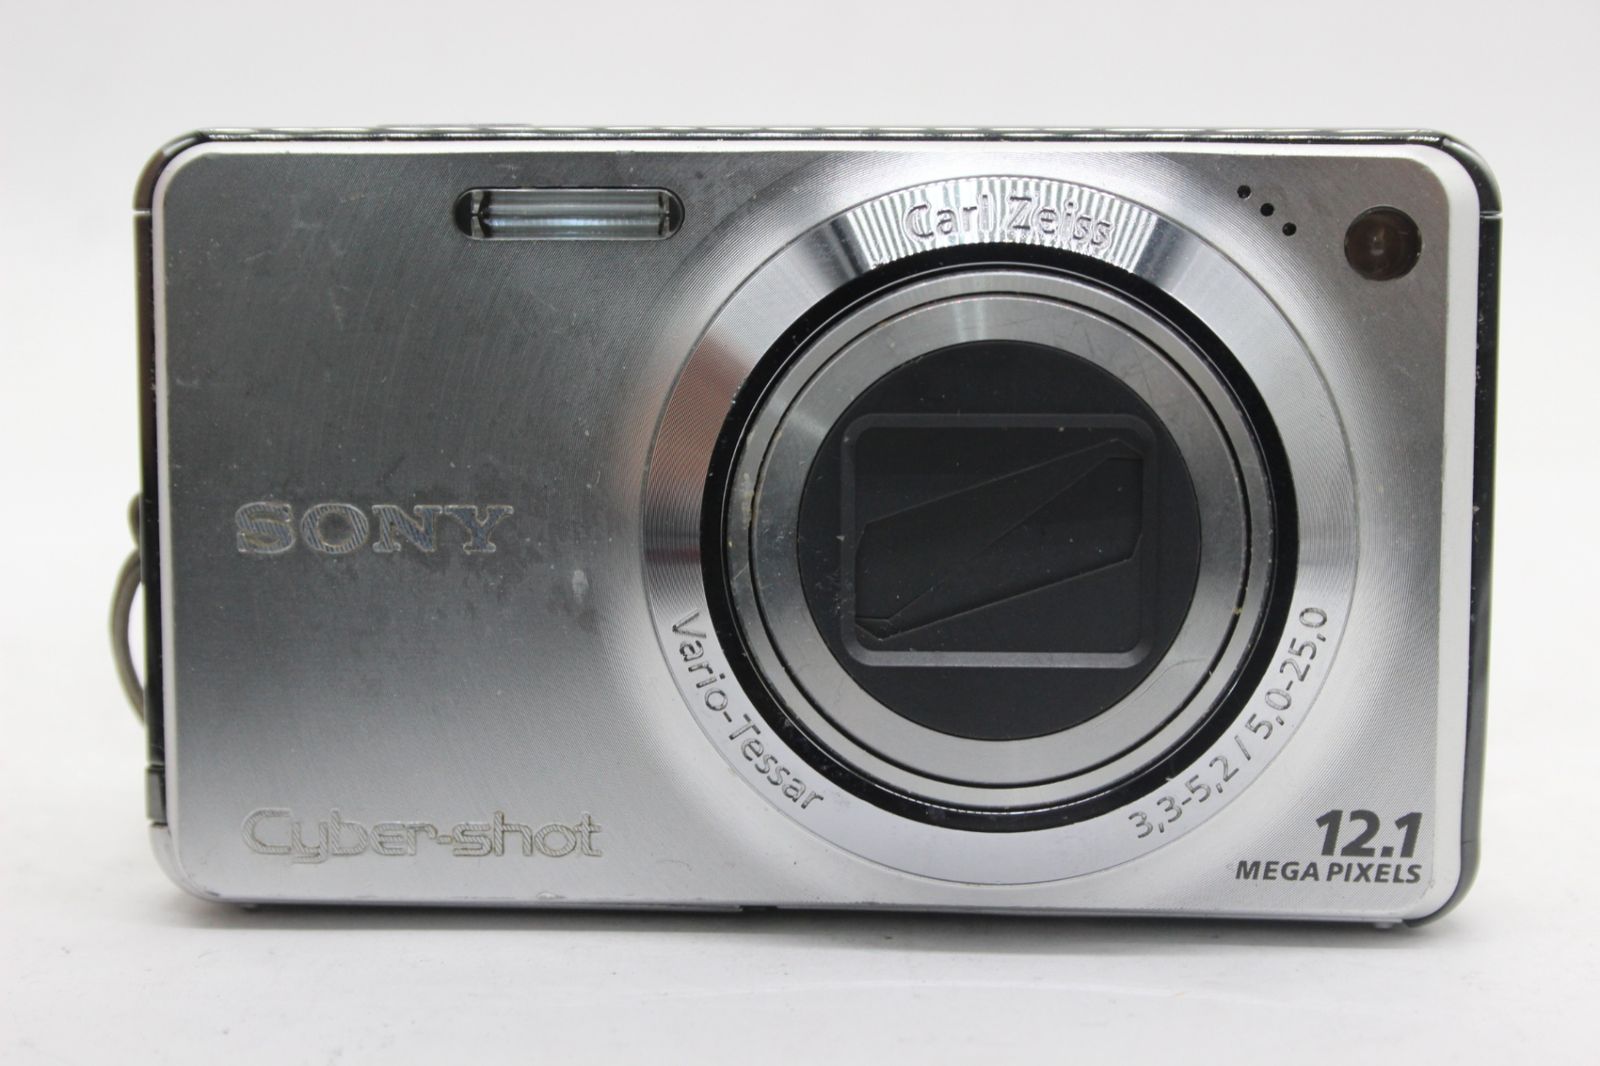 返品保証】 ソニー SONY Cyber-shot DSC-W270 5x バッテリー付き コンパクトデジタルカメラ s8134 - メルカリ